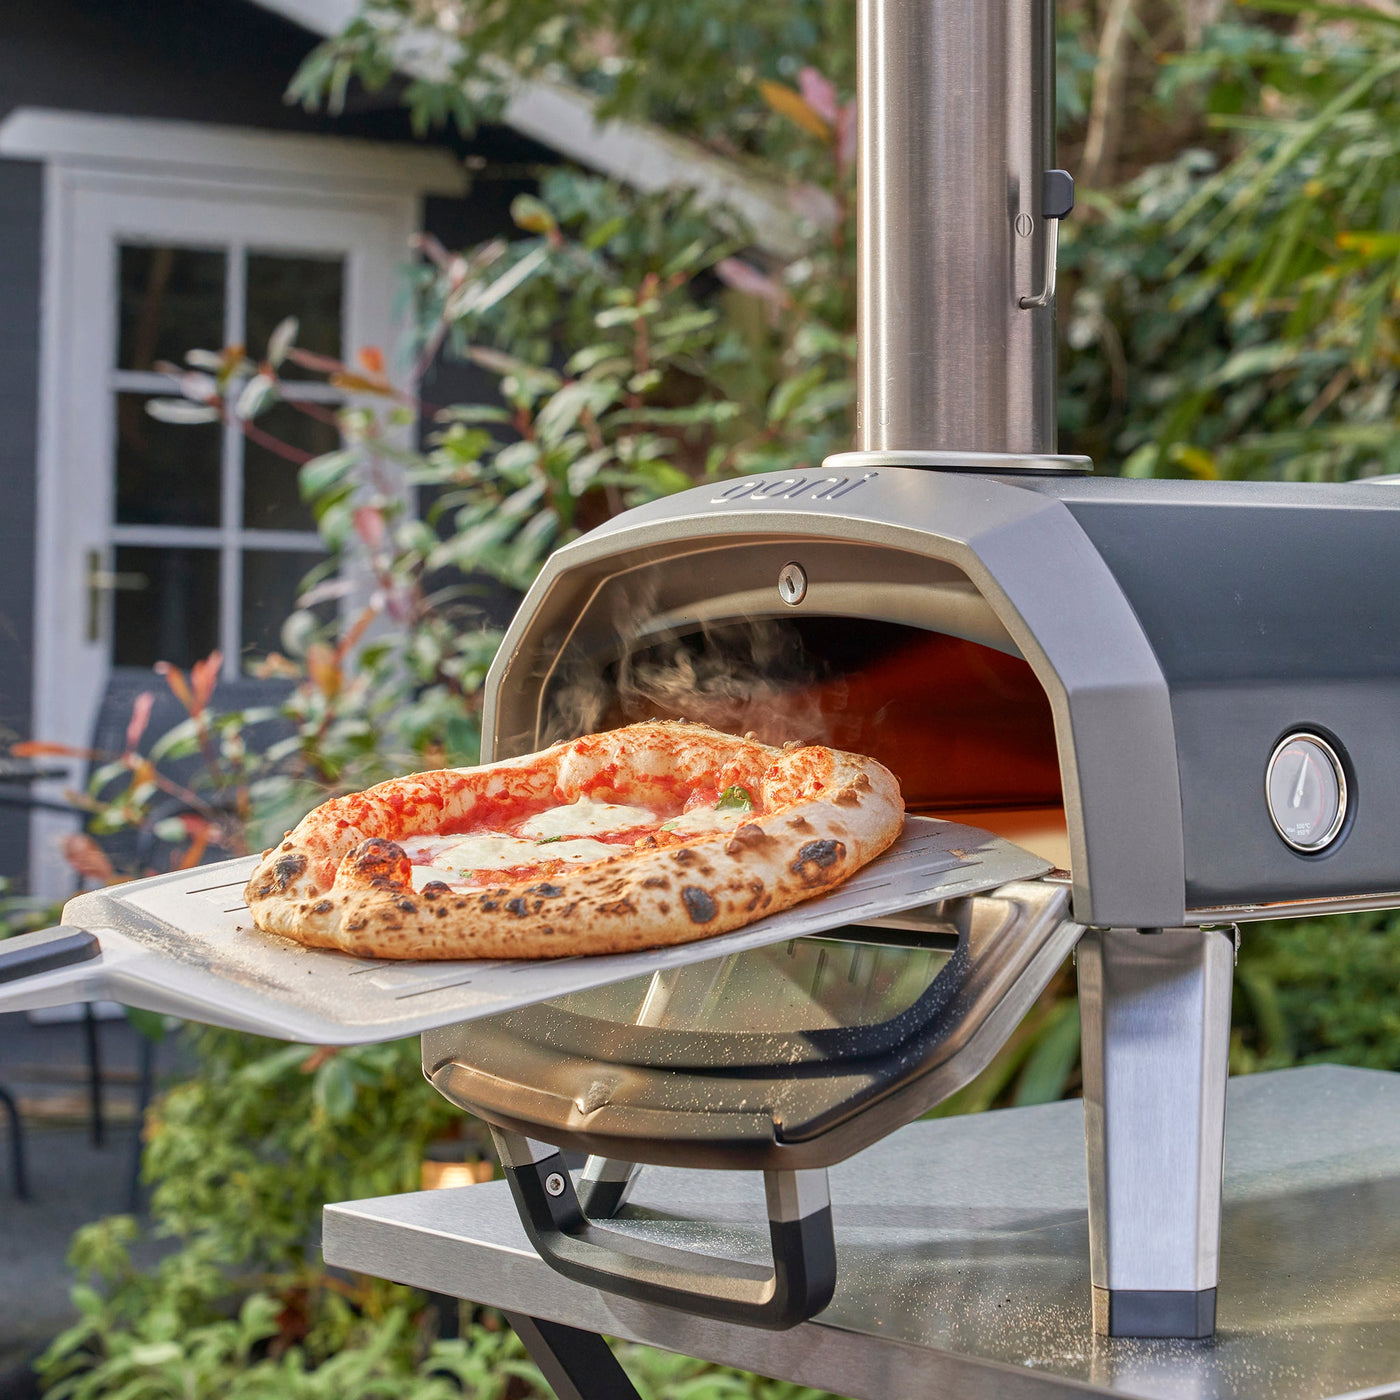 Ooni Karu 12G Multi-Fuel Pizza Oven